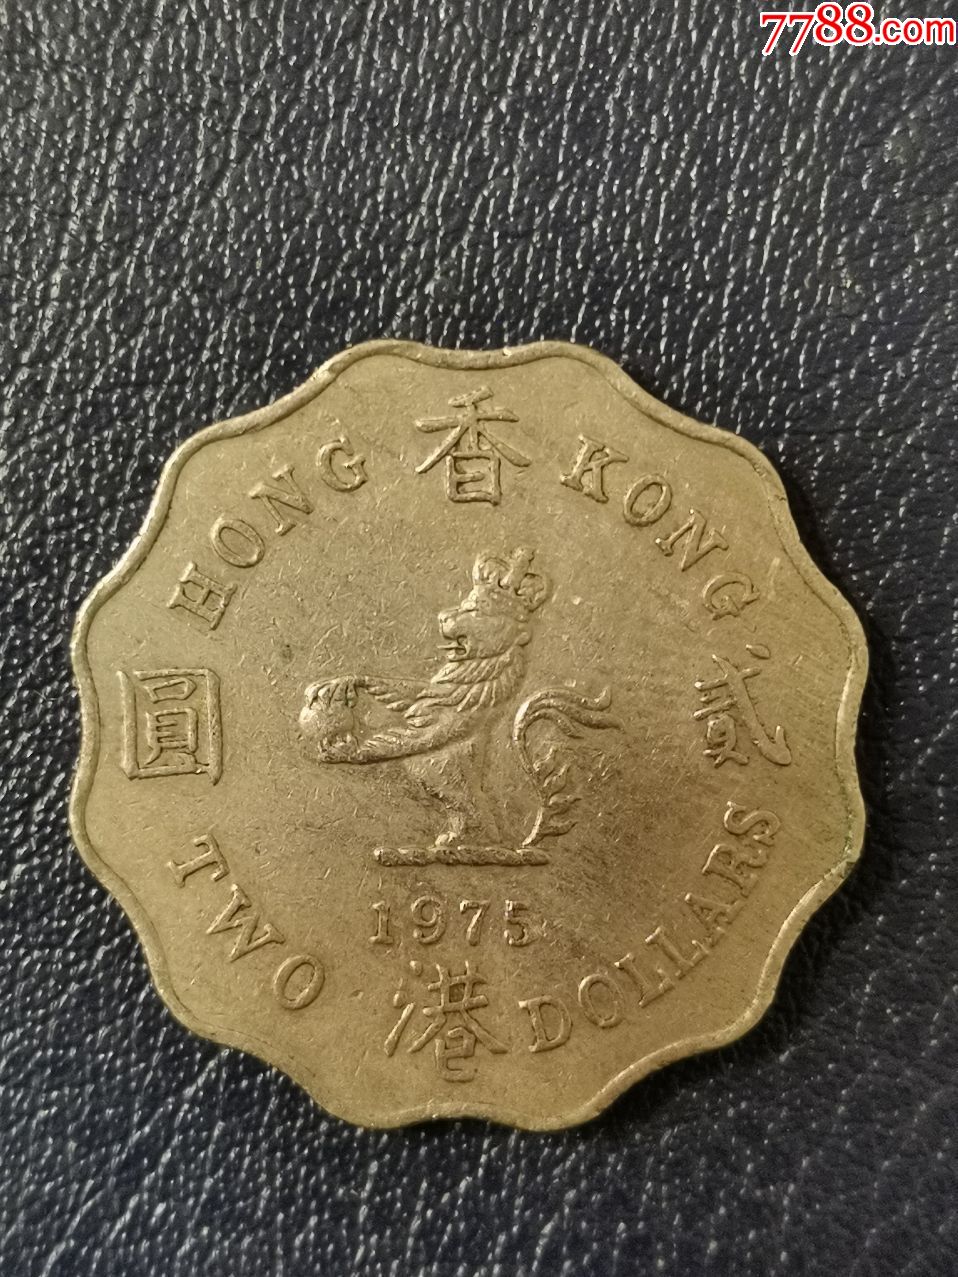 港币1975年2元